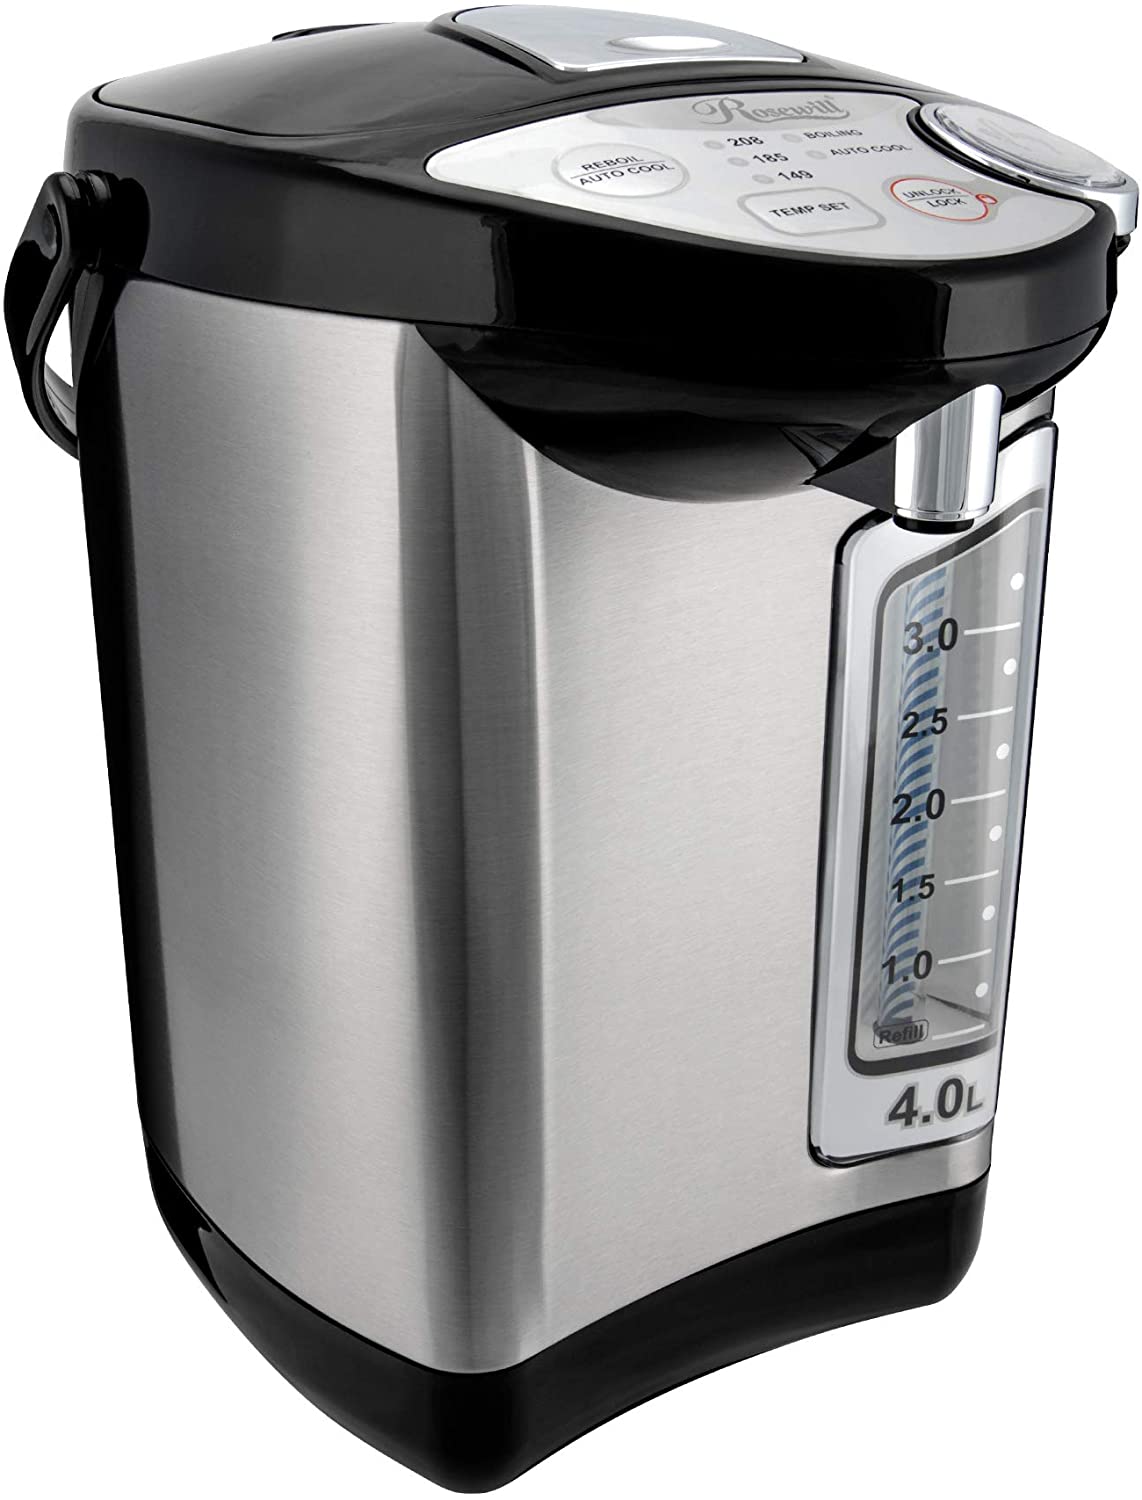 Chefman 5.3-Liter Instant Electric Hot Water Pot